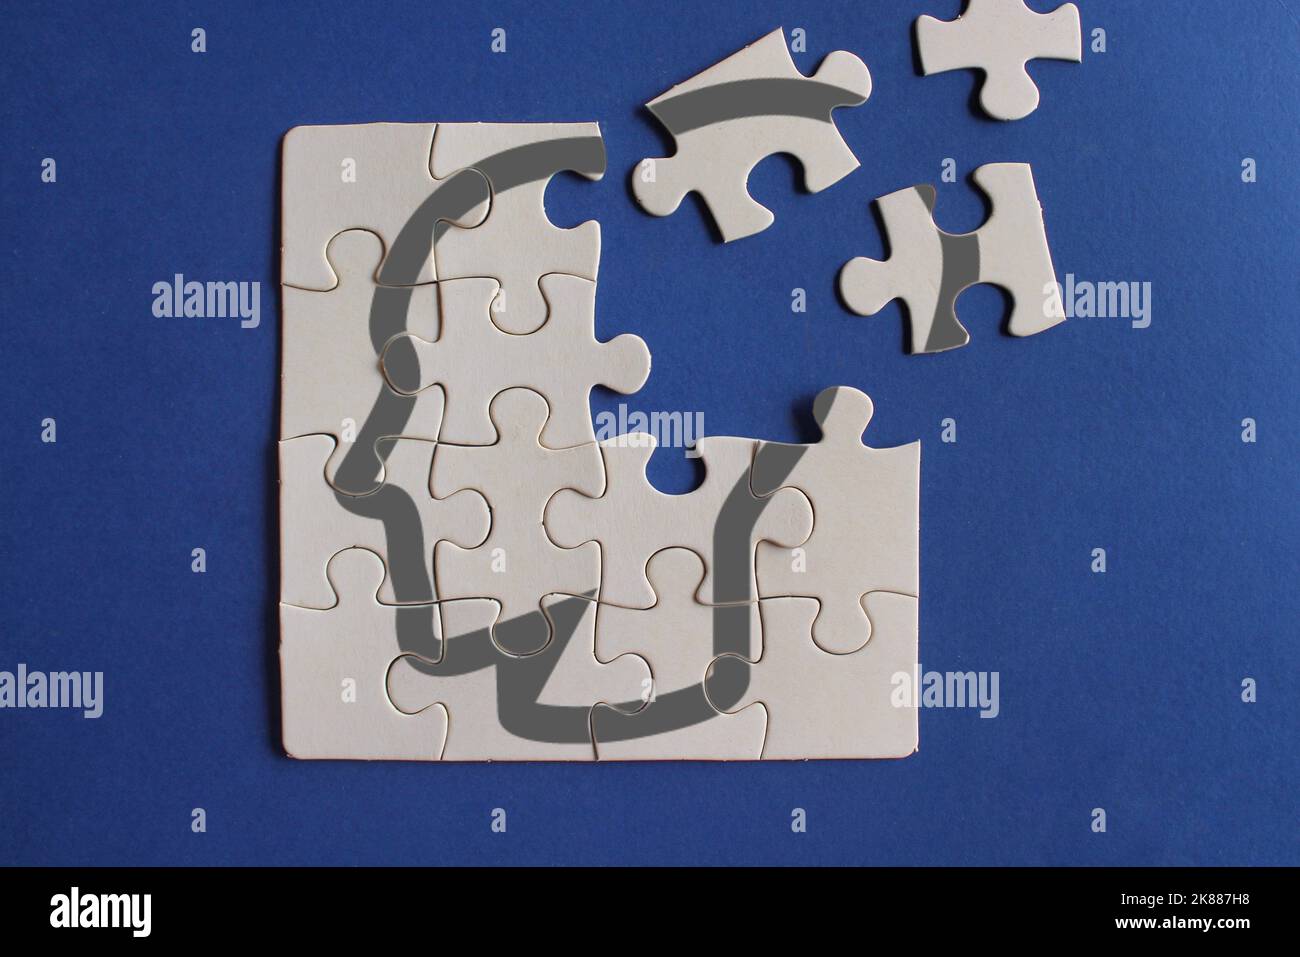 La tête humaine sur des puzzles incomplets. Démence, perte de mémoire, santé mentale et Alzheimer concept Banque D'Images